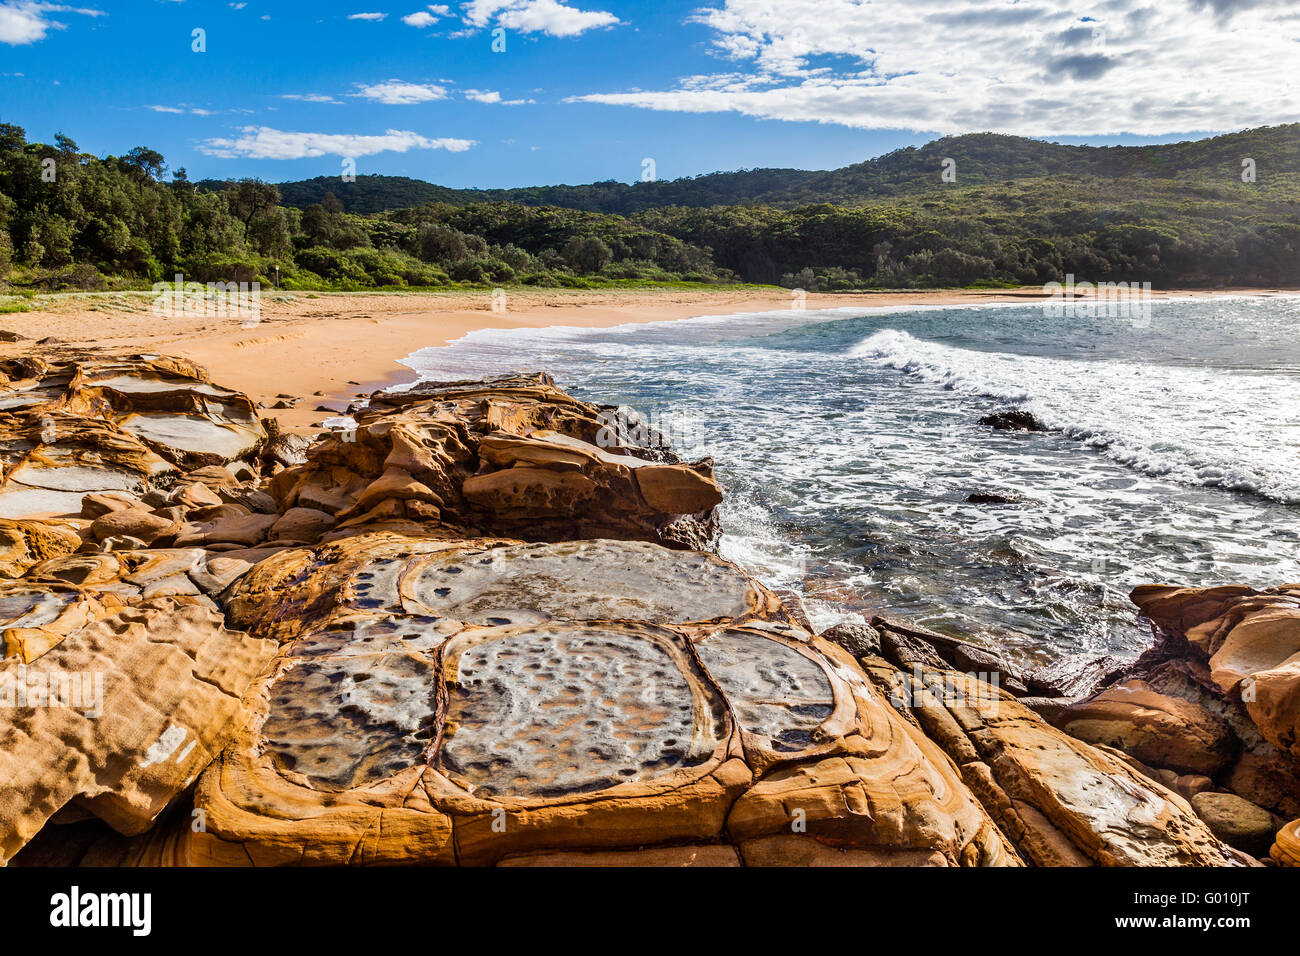 Australia, Nueva Gales del Sur, de la Costa Central, Bouddi National Park, la playa y la plataforma de roca en Maitland Bay. Foto de stock